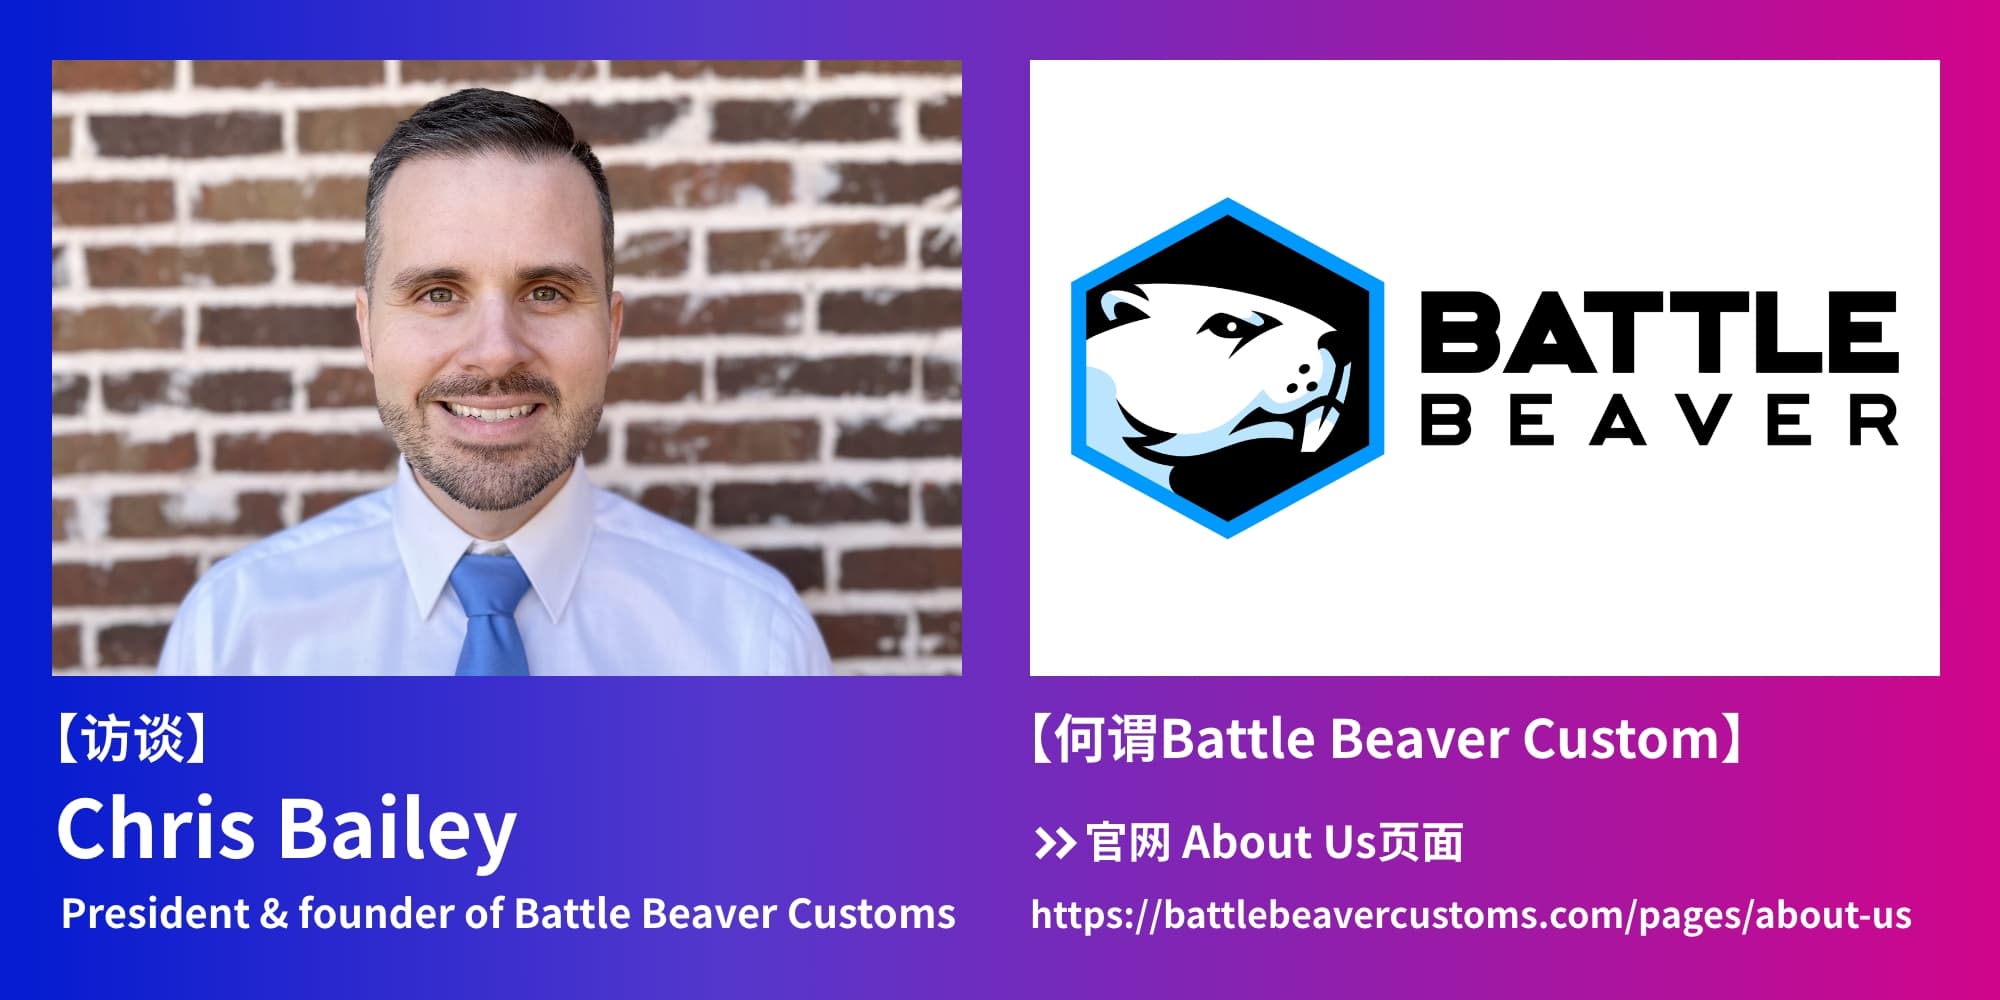 【访谈】Chris Bailey:President & founder of Battle Beaver Customs BATTLE BEAVER 【何谓Battle Beaver Custom】→官网 About Us页面 https://battlebeavercustoms.com/pages/about-us